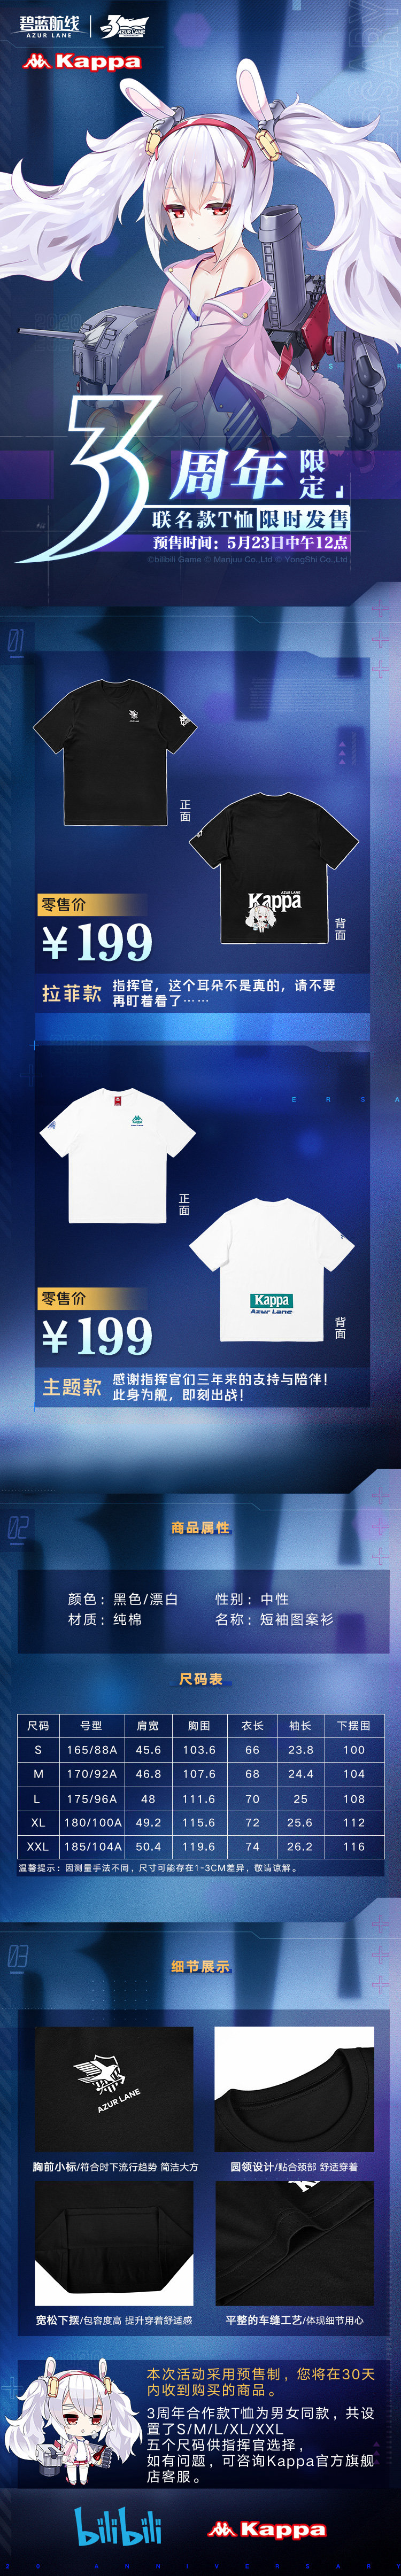 碧蓝航线与Kappa三周年合作活动详解 联名T恤售价与尺码一览